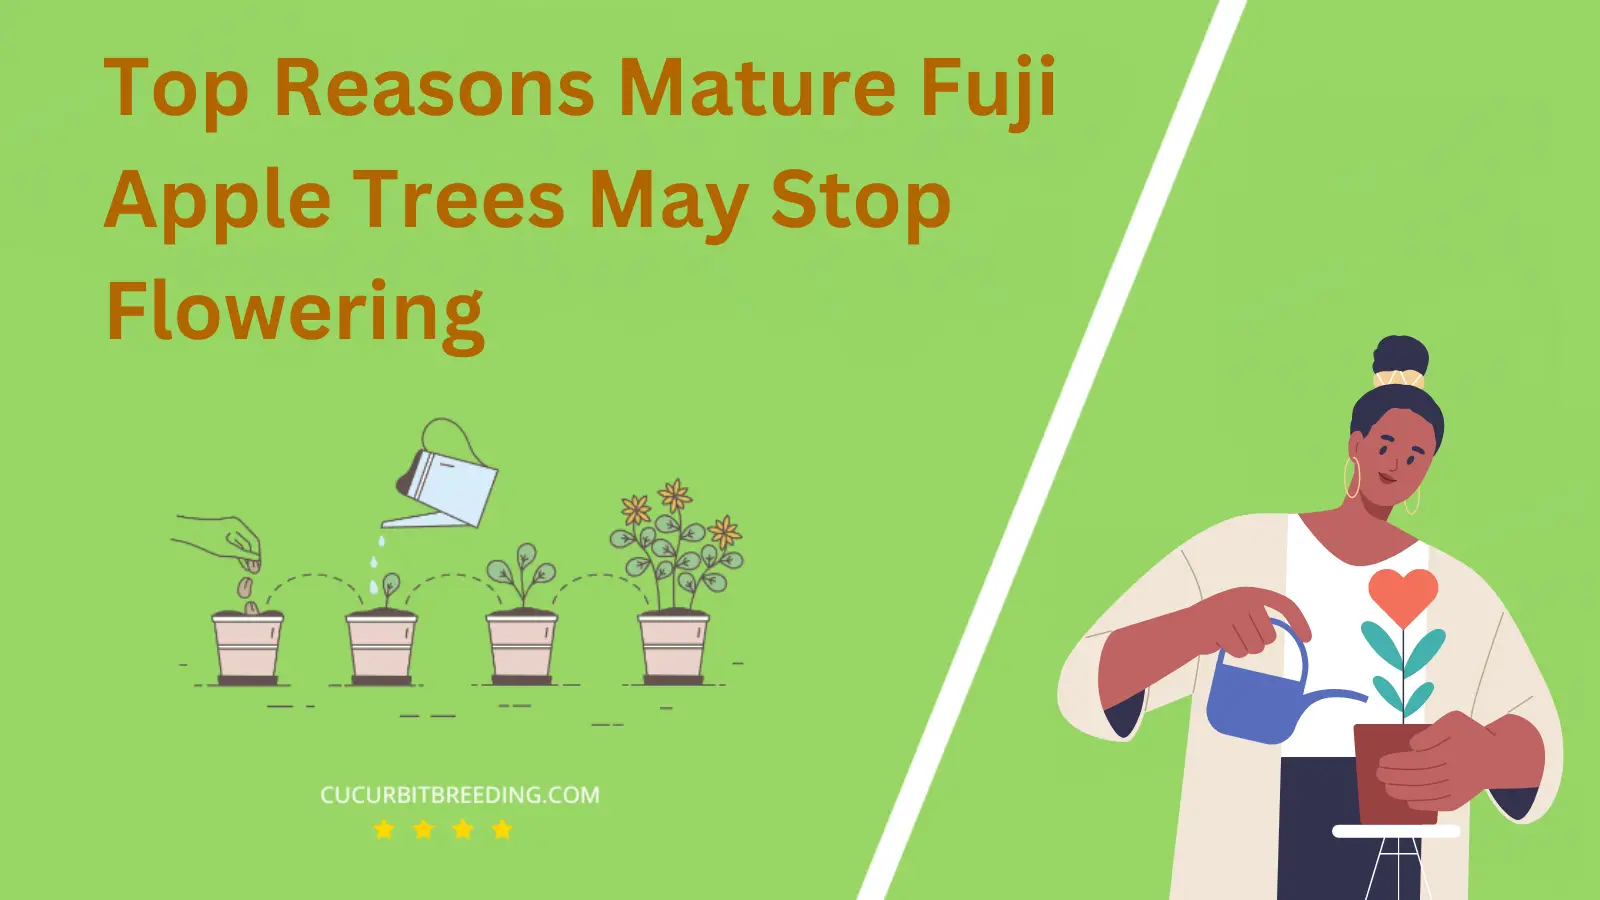 Top Reasons Mature Fuji Apple Trees May Stop Flowering